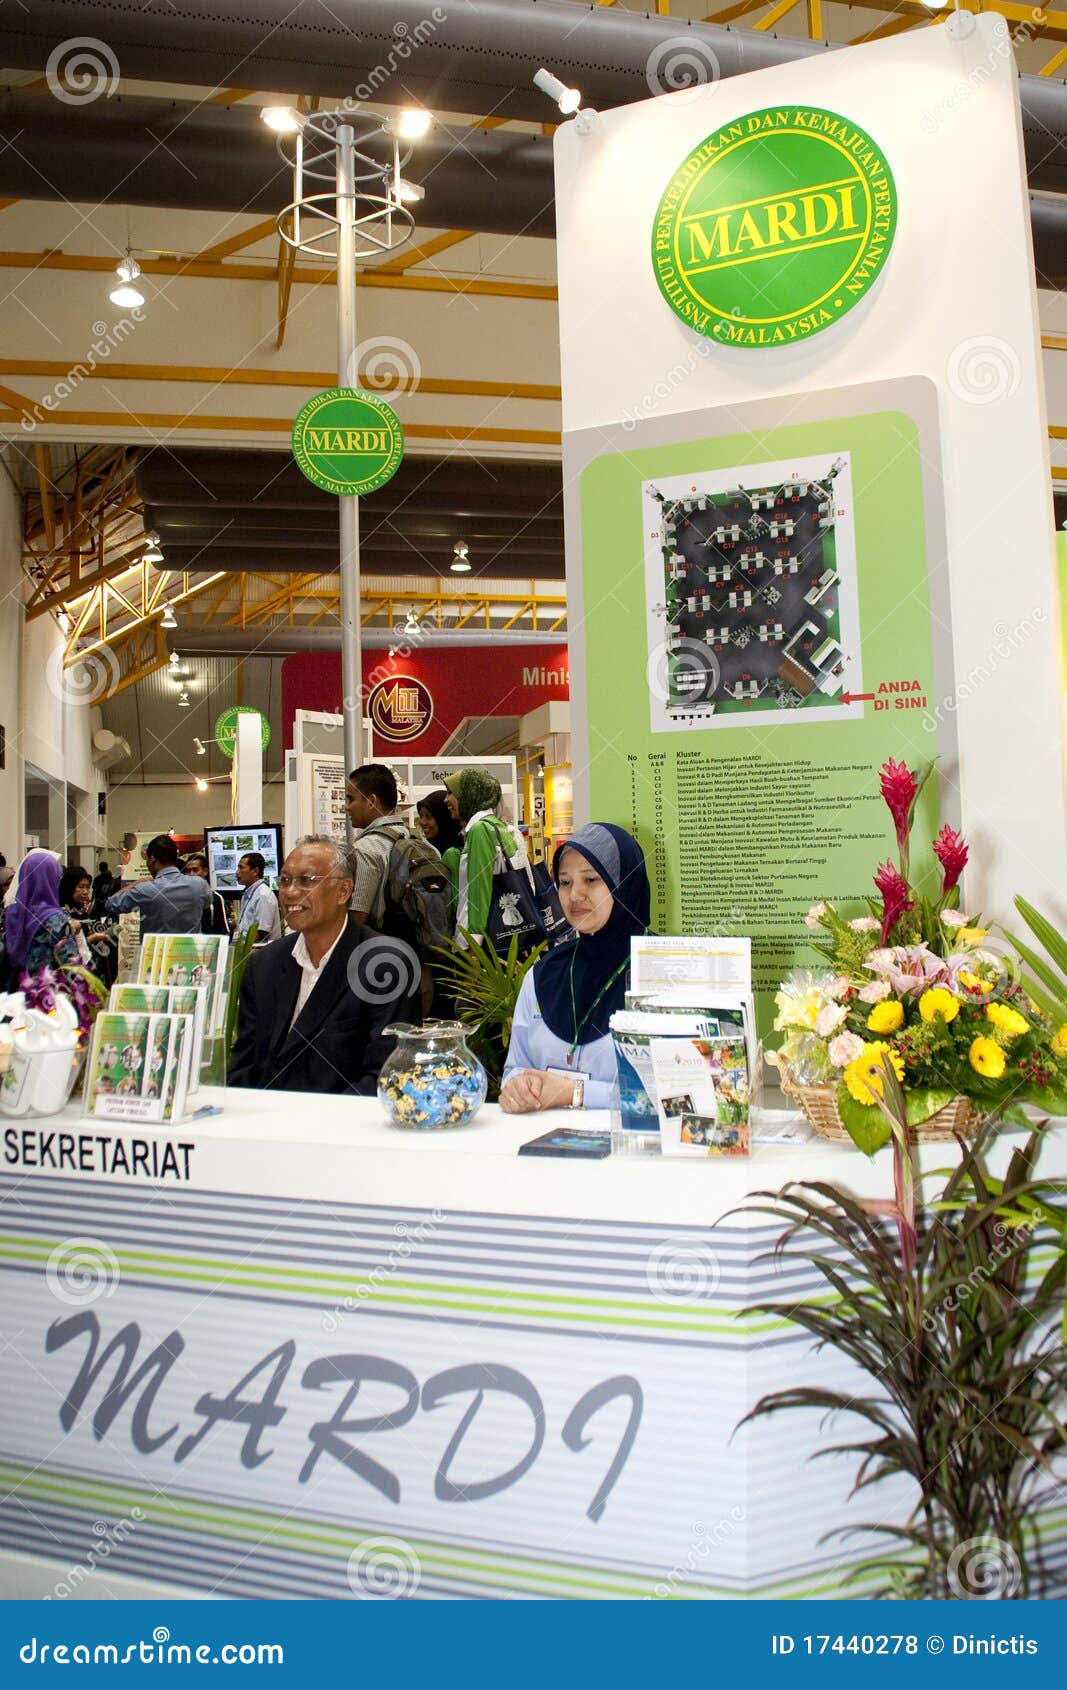 Exposition malaisienne d'agriculture et d'Agrotourism. KUALA LUMPUR - 30 NOVEMBRE : MARDI une organisation de recherche et développement en nourriture, agriculture et industries bio-basées pendant l'agriculture, l'horticulture et l'Agrotourism malaisiens affichent le 30 novembre 2010 à Kuala Lumpur, Malaisie.